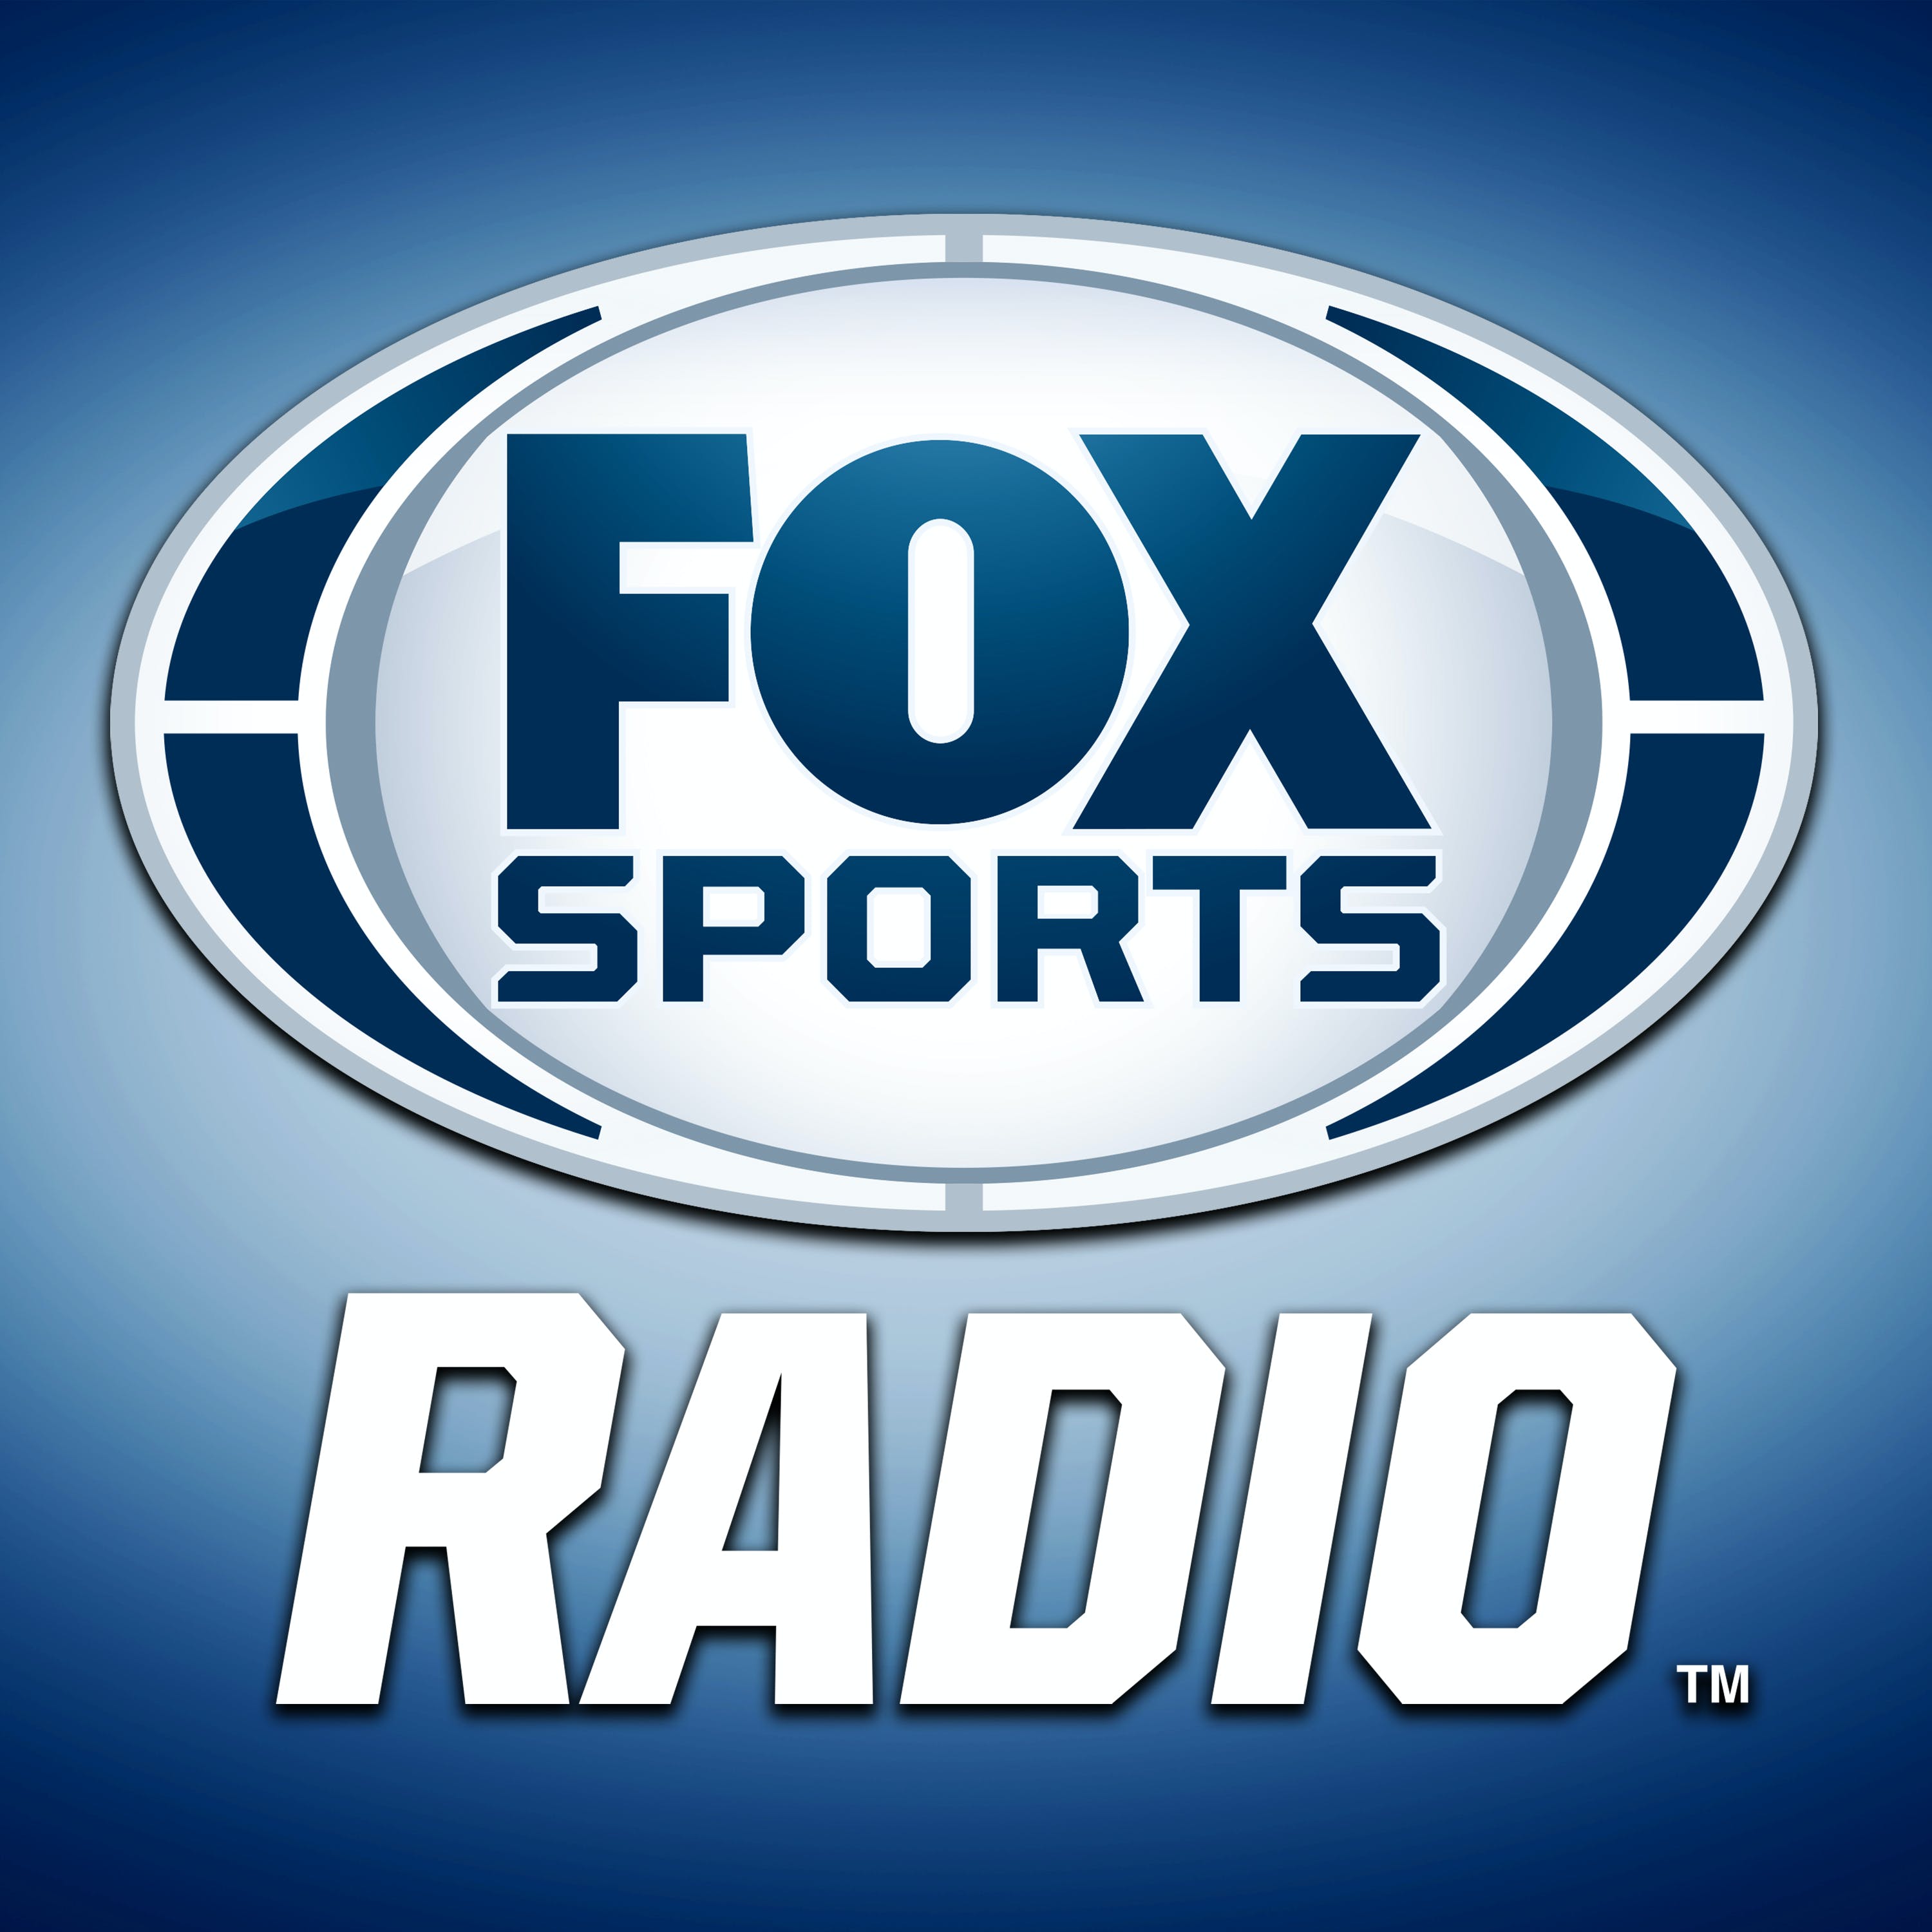 02/13/2021 - FOX Sports Saturday with Steve Hartman and Geoff Schwartz